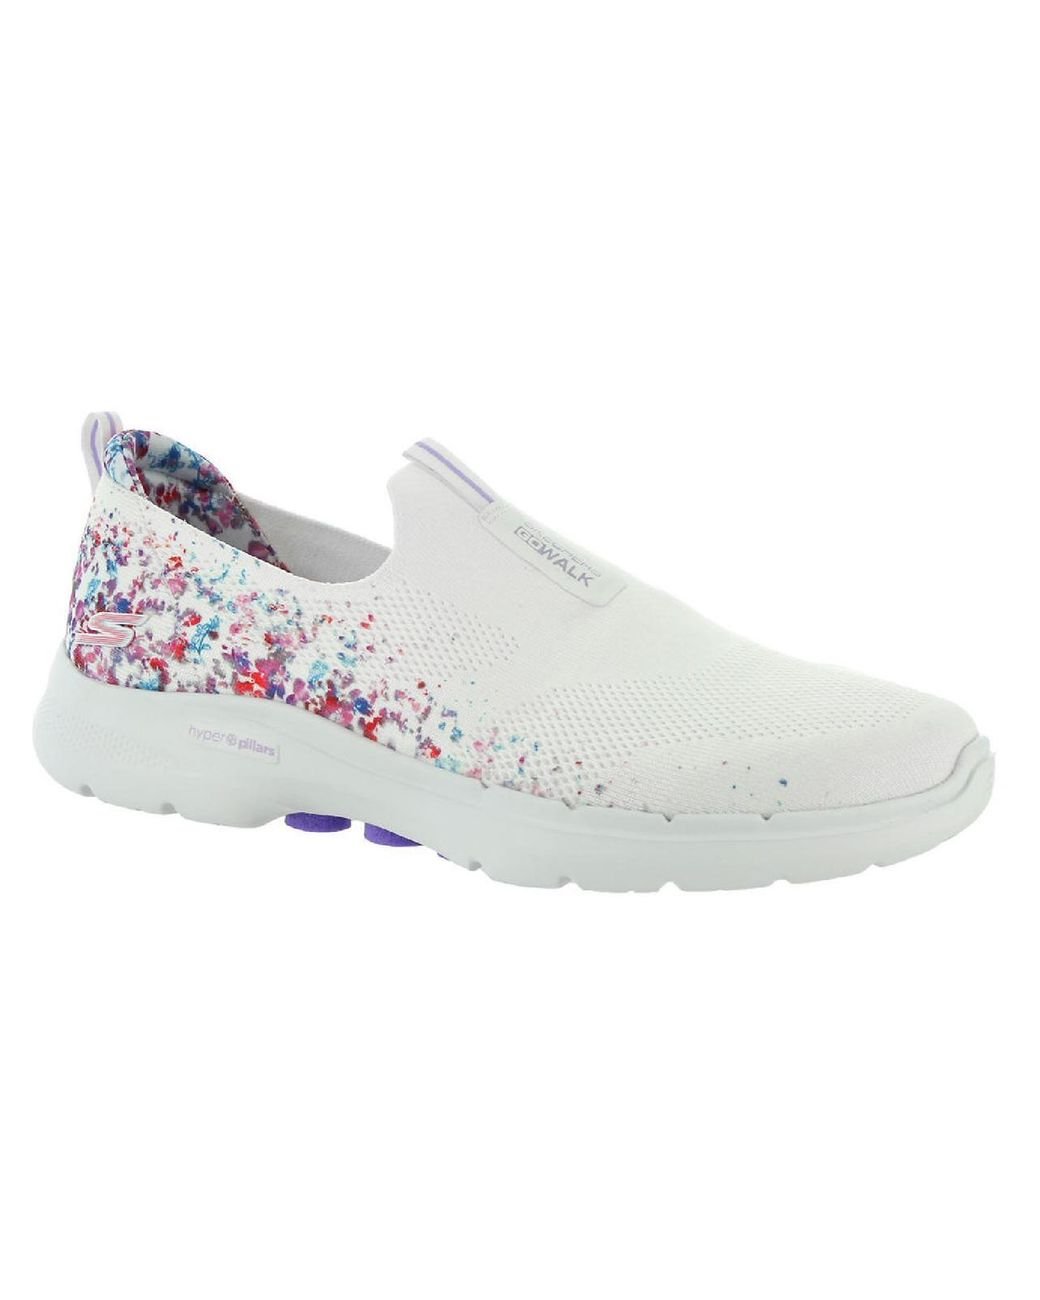 Skechers Go Walk 6 - Floral Foam Slip-on in White | Lyst